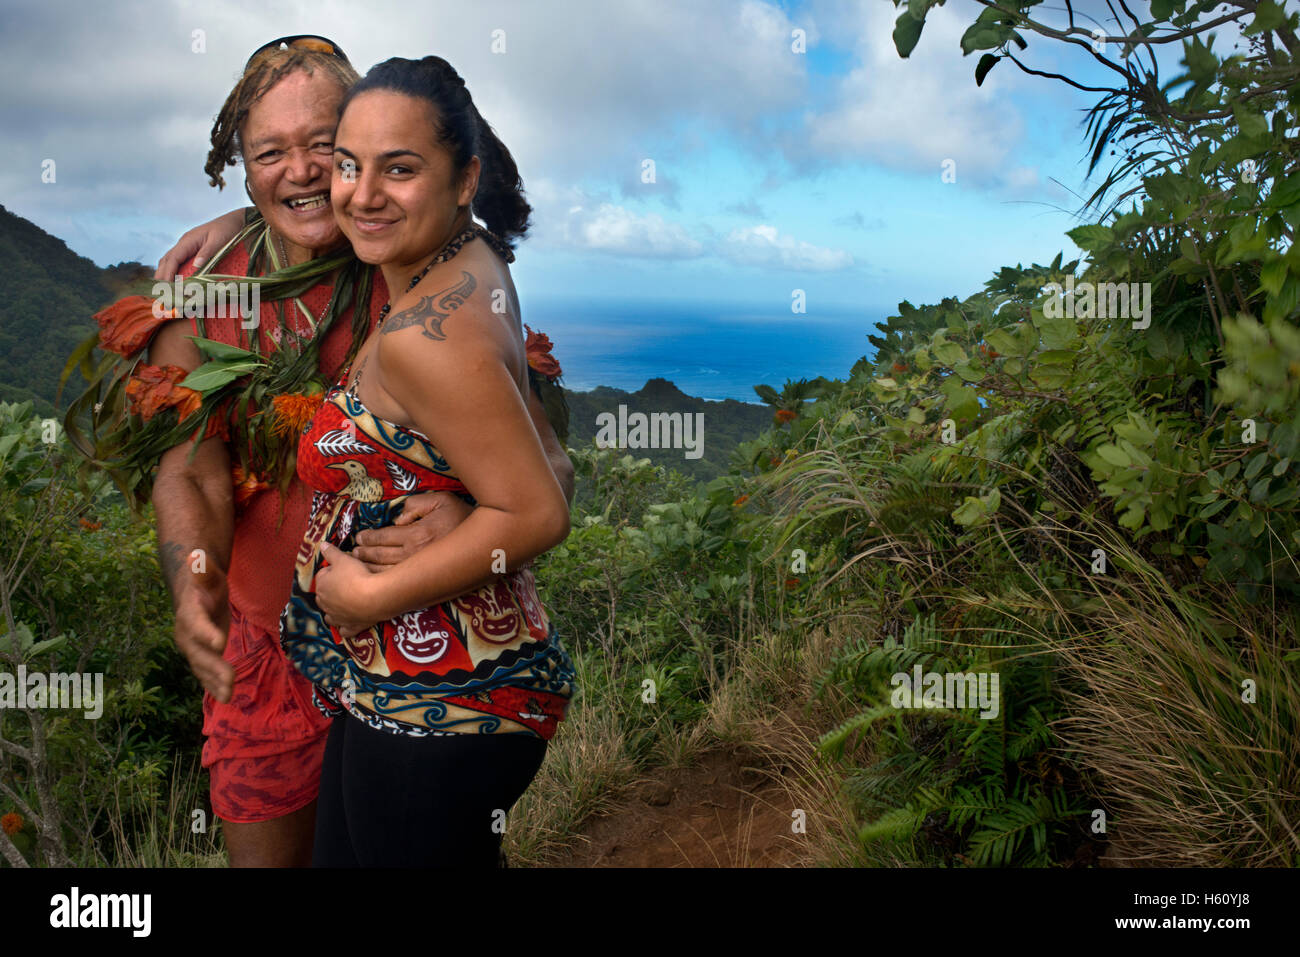 Rarotonga Island. Isole Cook. Polinesia. Oceano Pacifico del sud. Un turista con maorí tattoo prende le immagini con il Sig. Pa. dieci minu Foto Stock